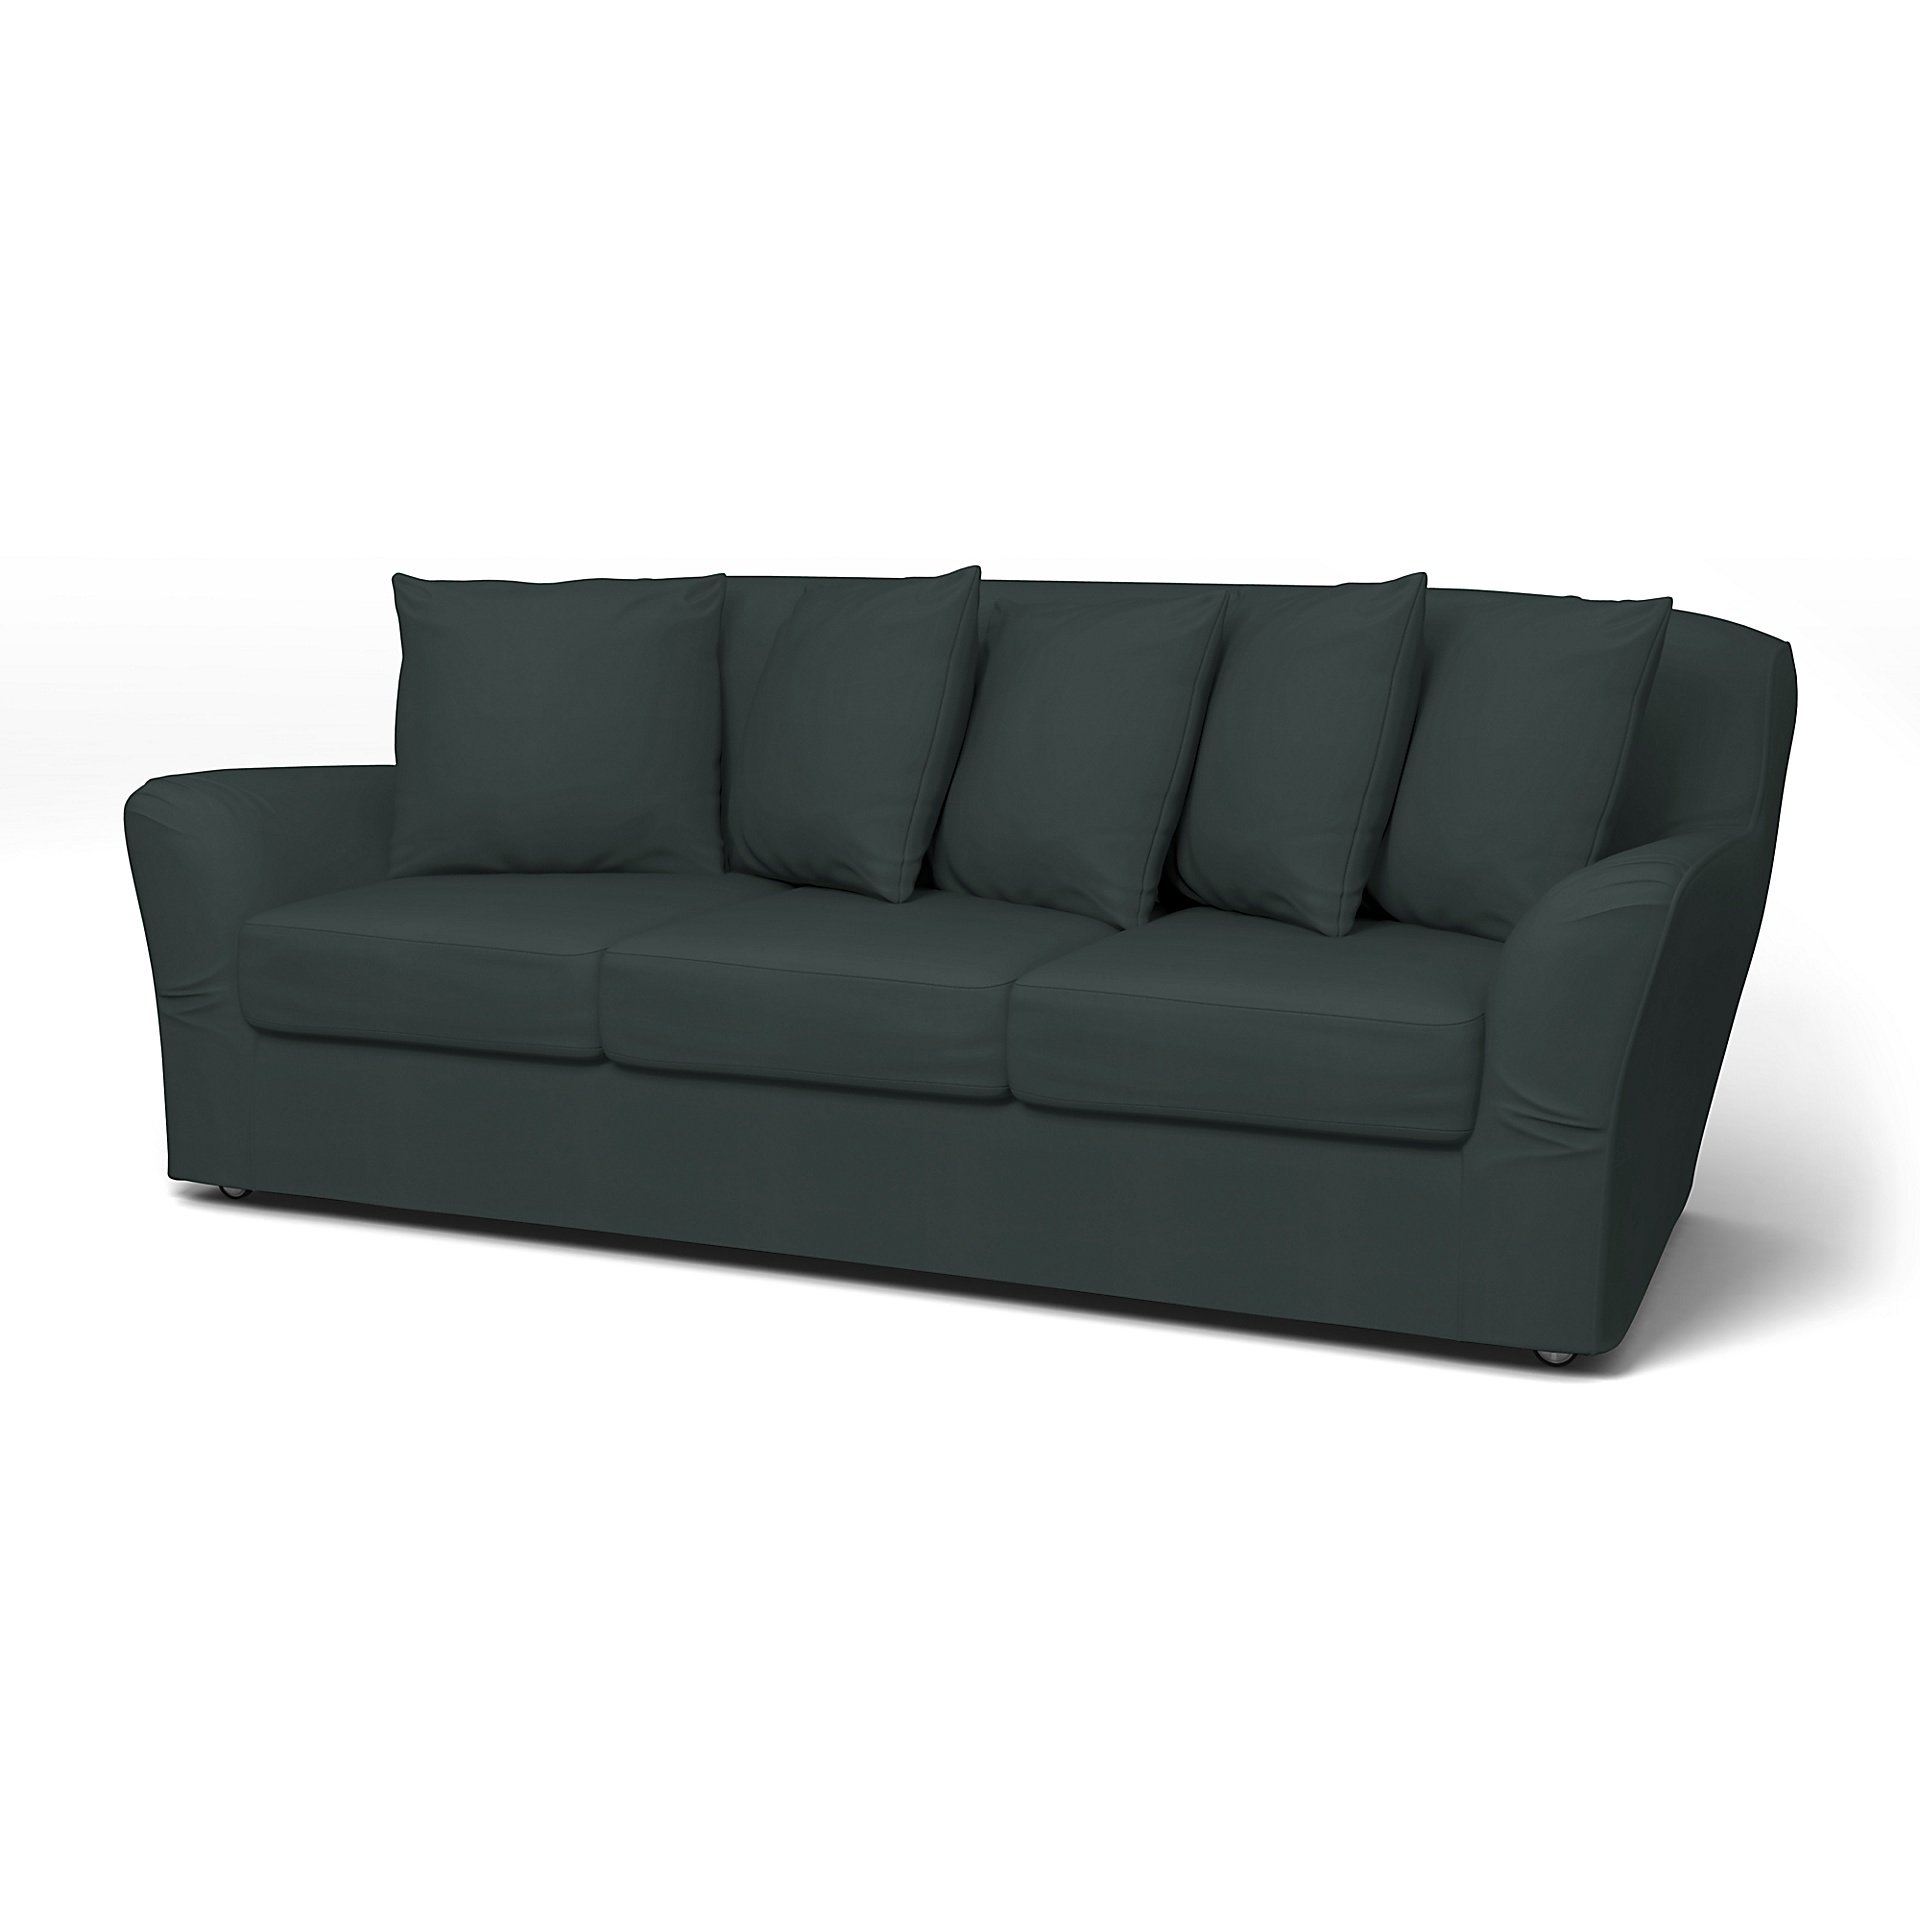 IKEA - Tomelilla 3 seater sofa, Graphite Grey, Cotton - Bemz